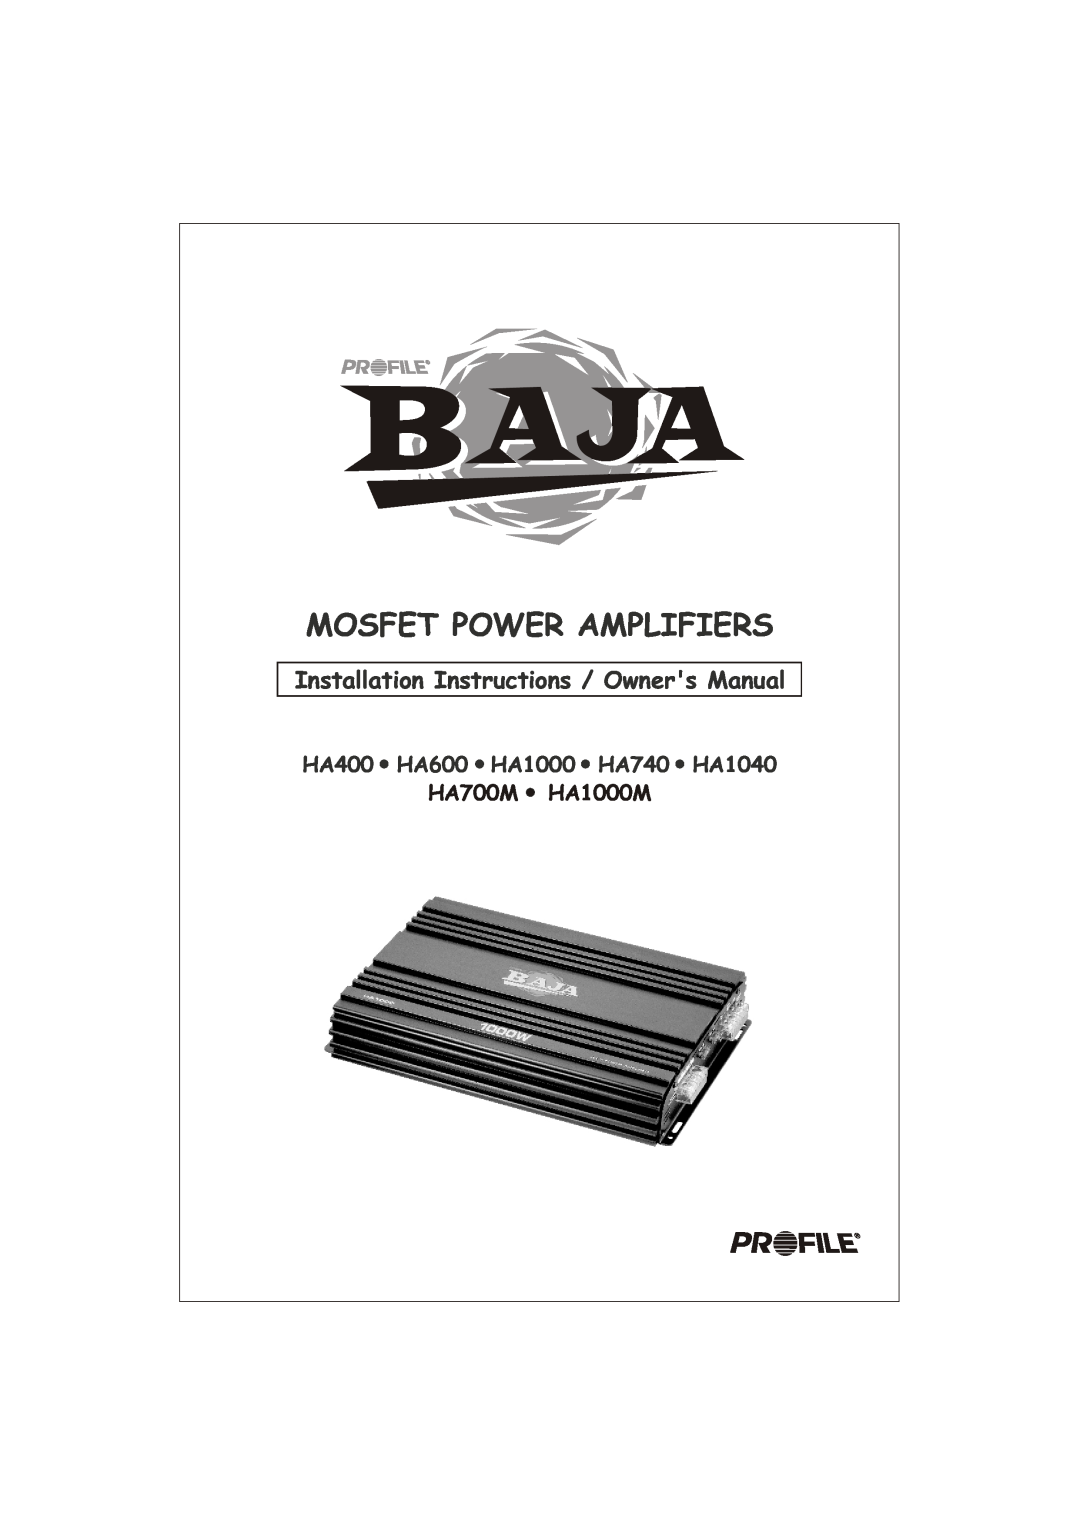 Profile installation instructions Mosfet Power Amplifiers, HA400 HA600 HA1000 HA740 HA1040, HA700M HA1000M 